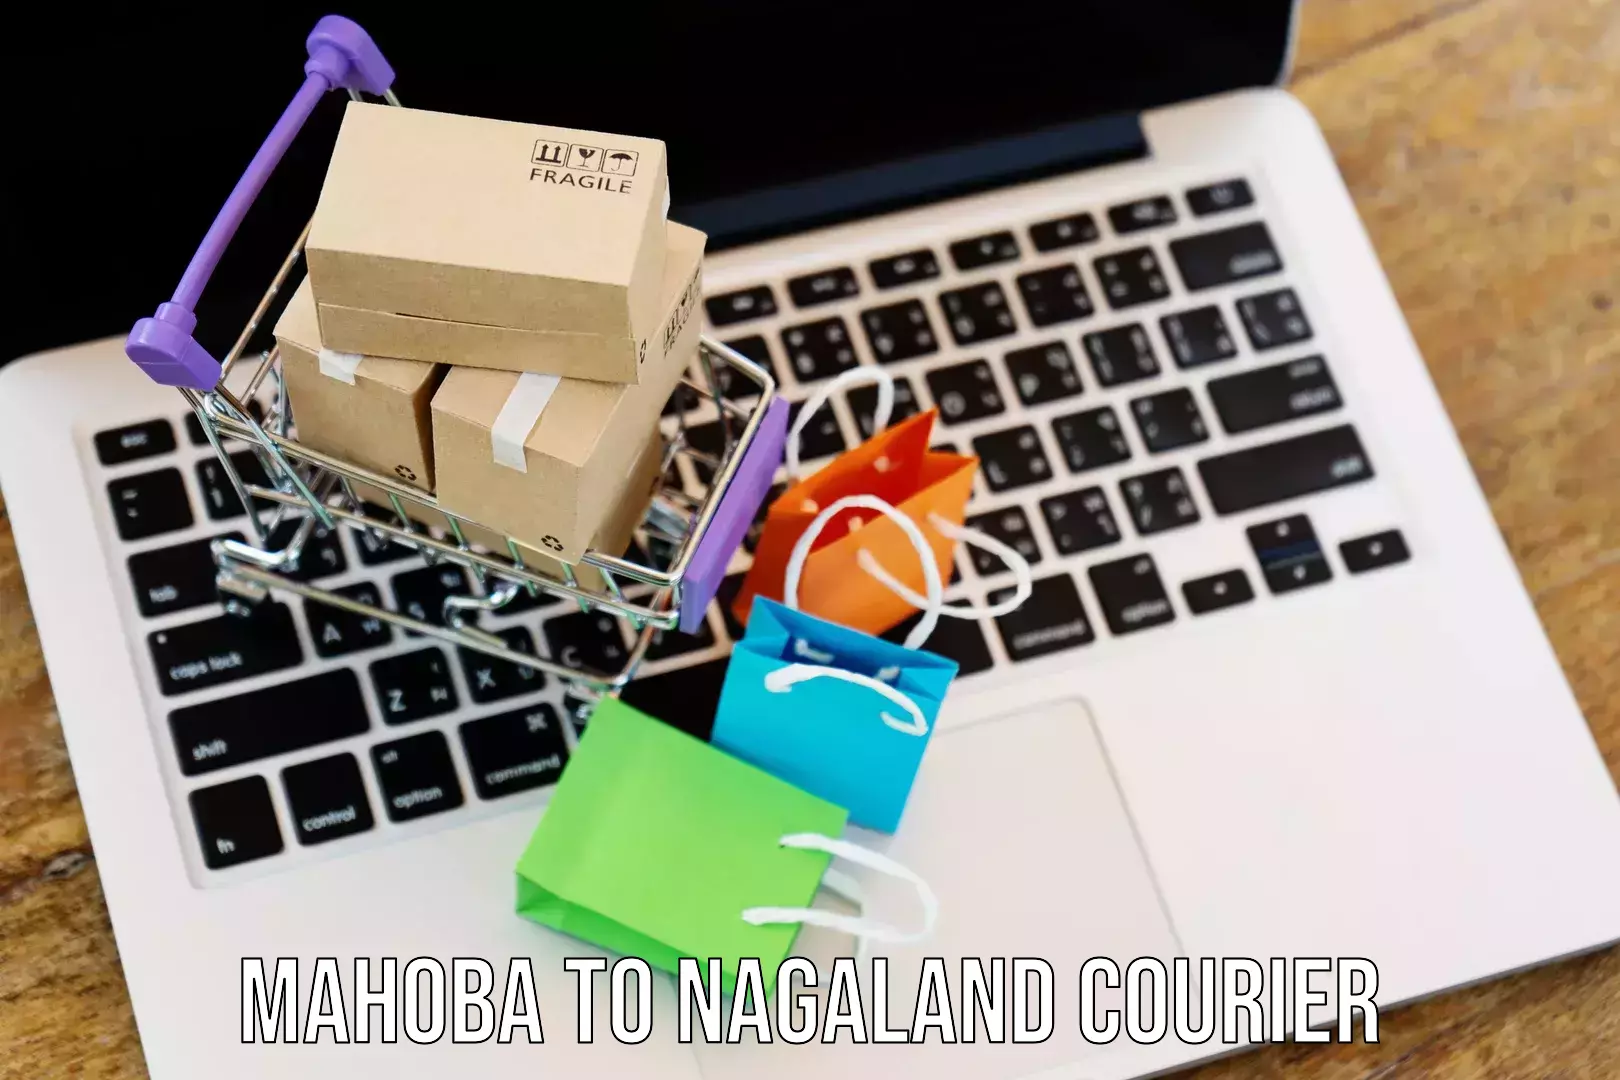 Express delivery network Mahoba to NIT Nagaland